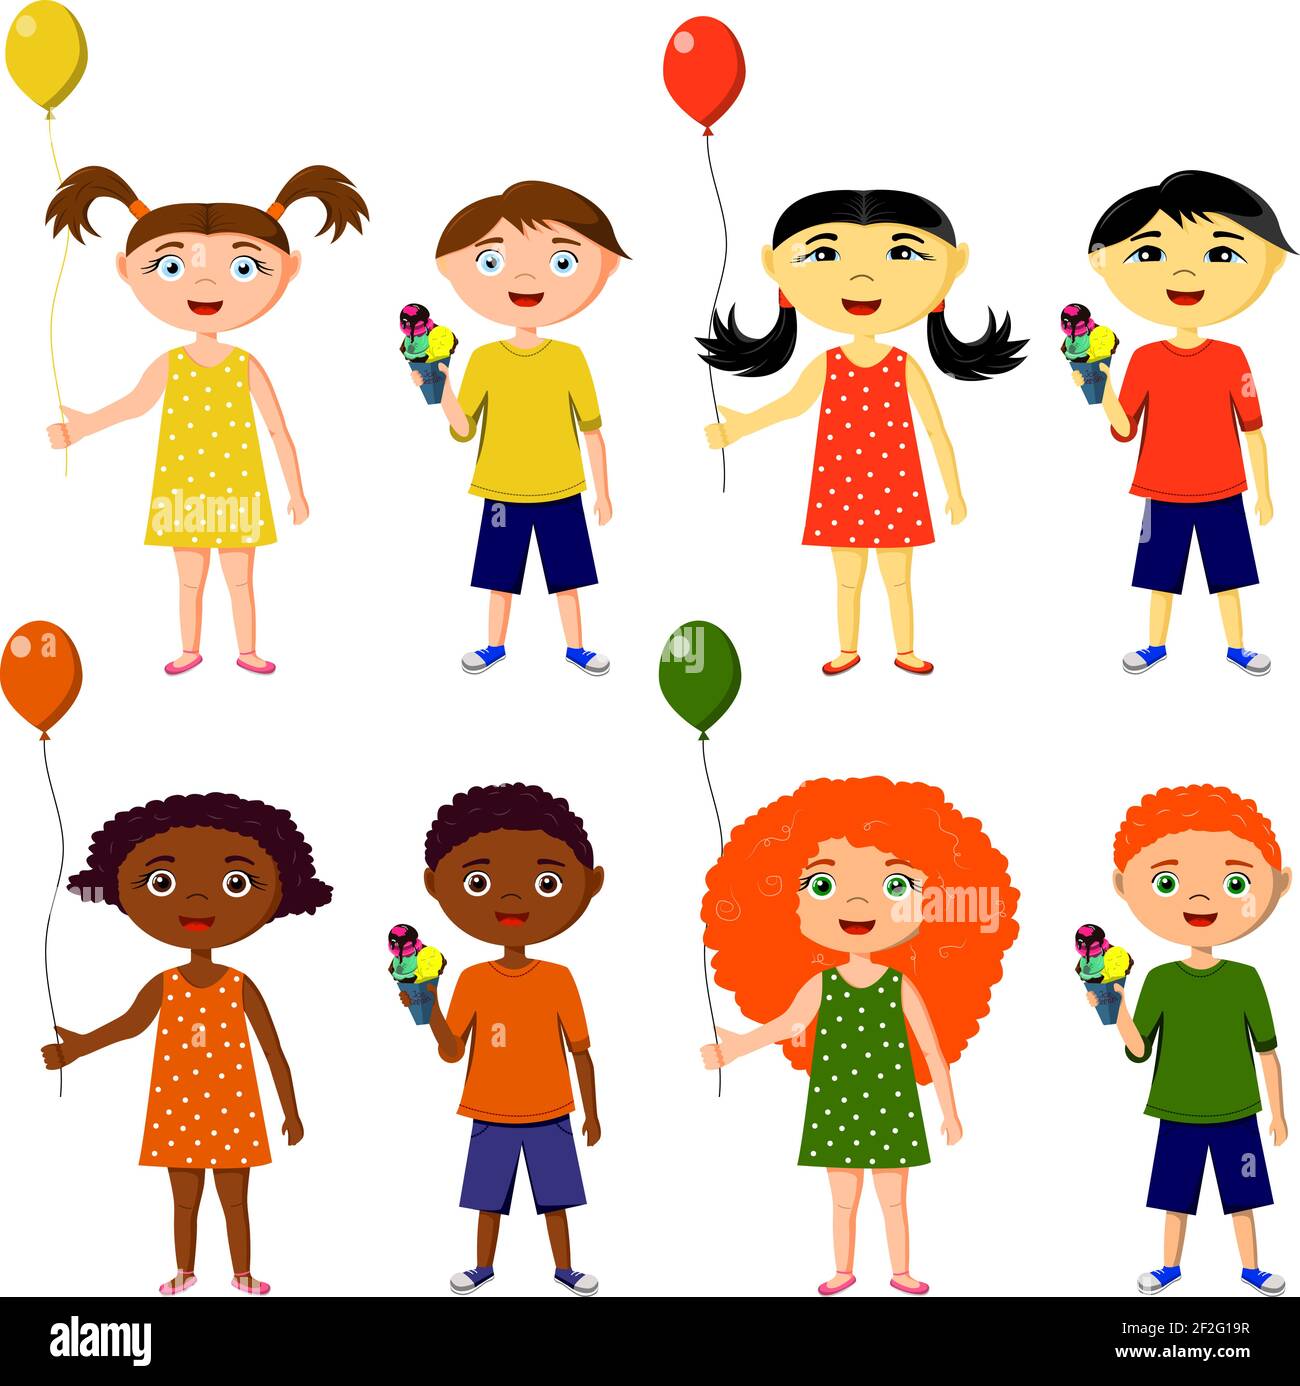 Un ensemble d'enfants de différentes nationalités du monde dans une robe, short. Ensemble de 8 personnages, garçons et filles avec ballons et glace. Afrique, Illustration de Vecteur